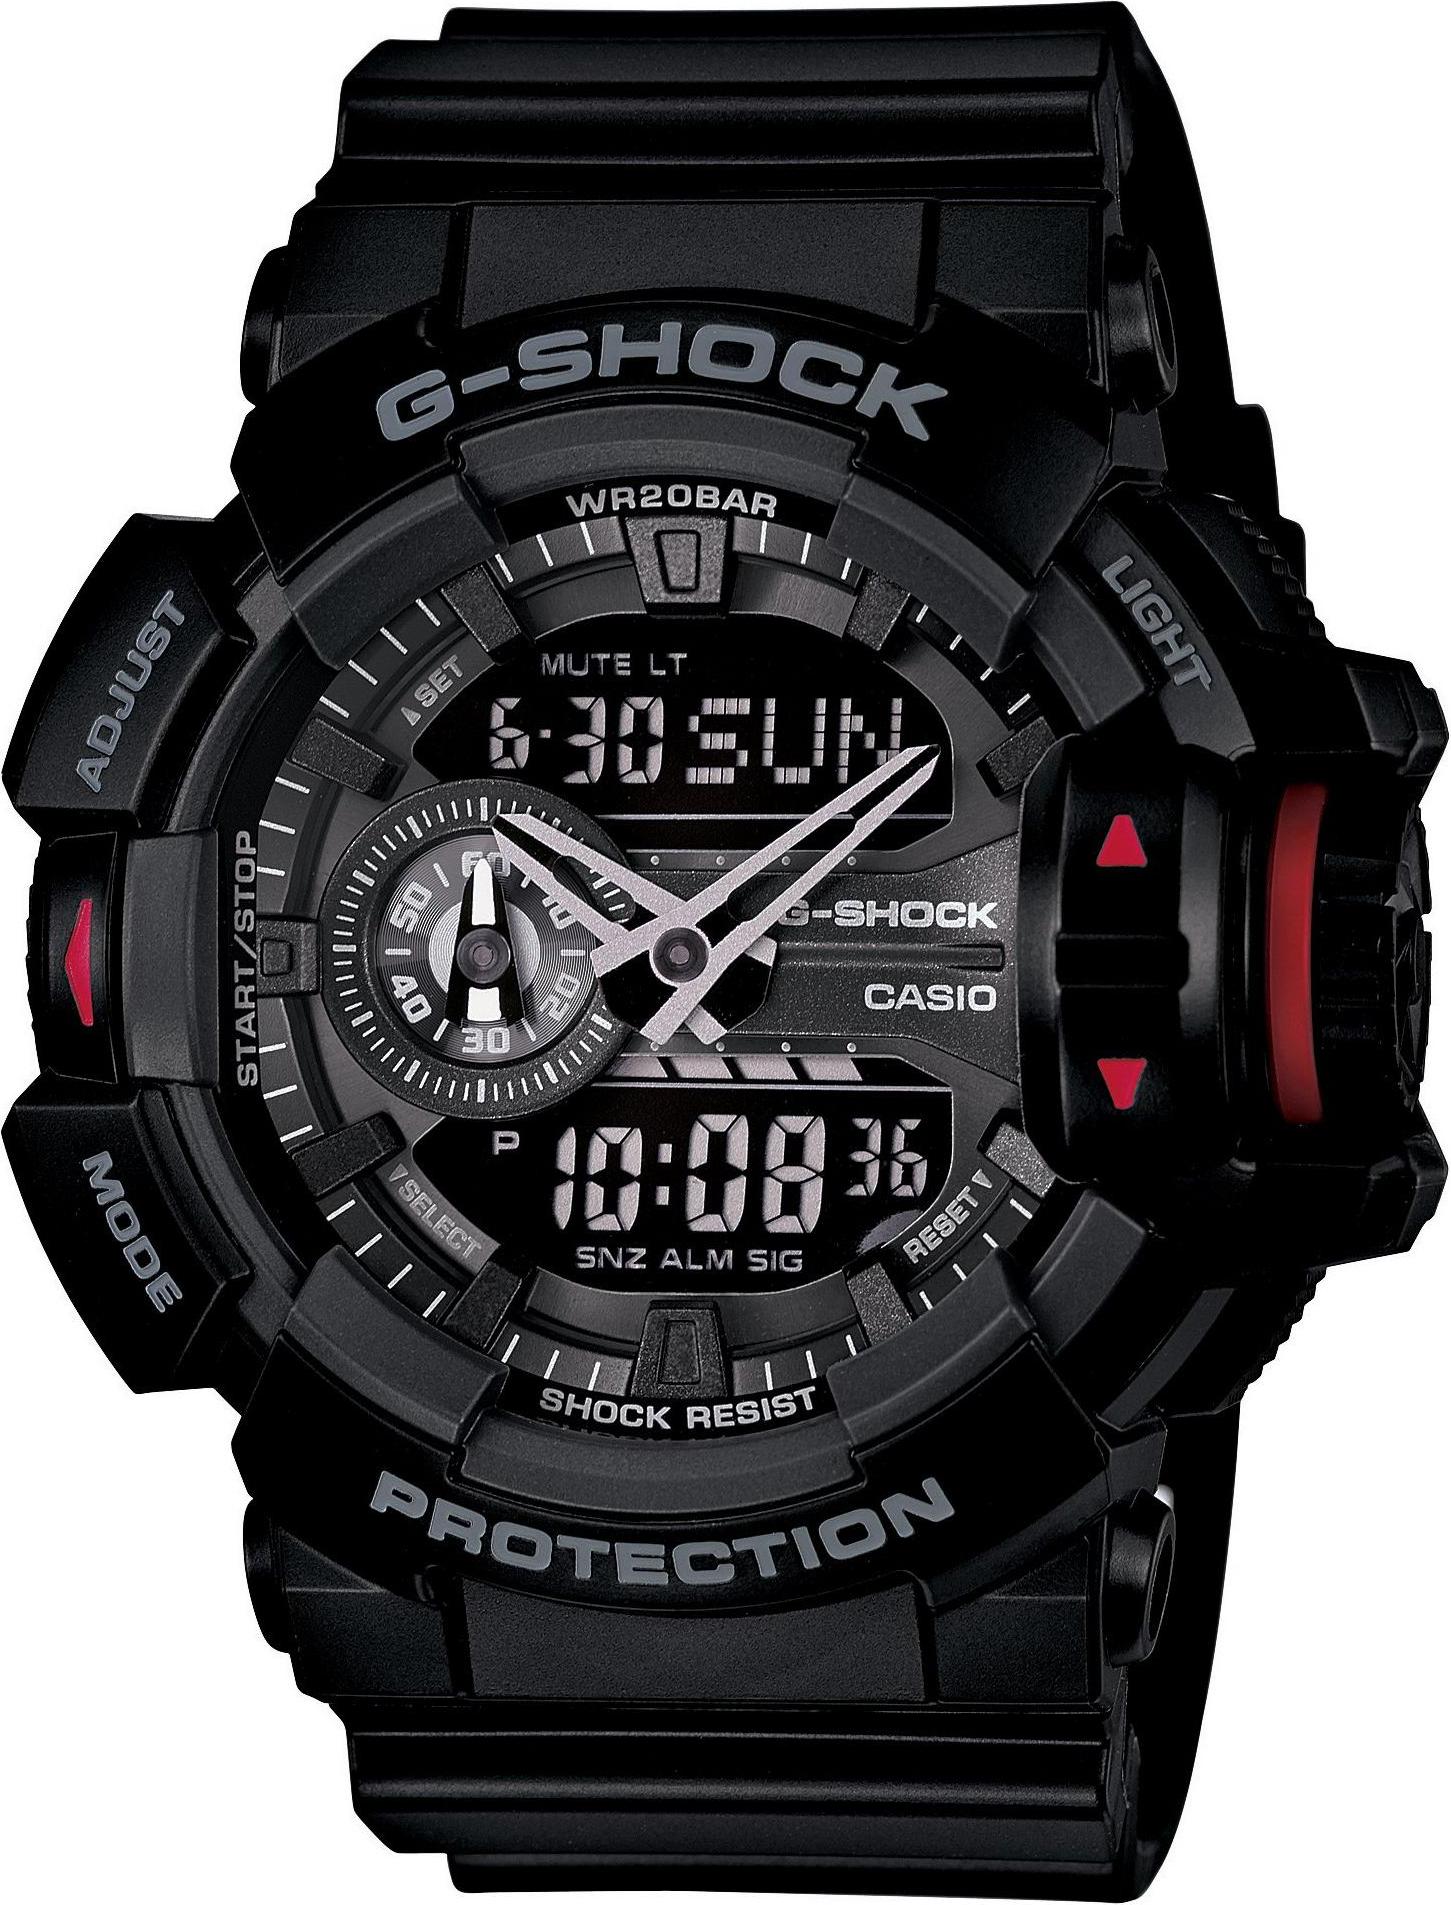 CASIO Watch G-SHOCK GA-400-7AJF Men's 腕時計(デジタル 